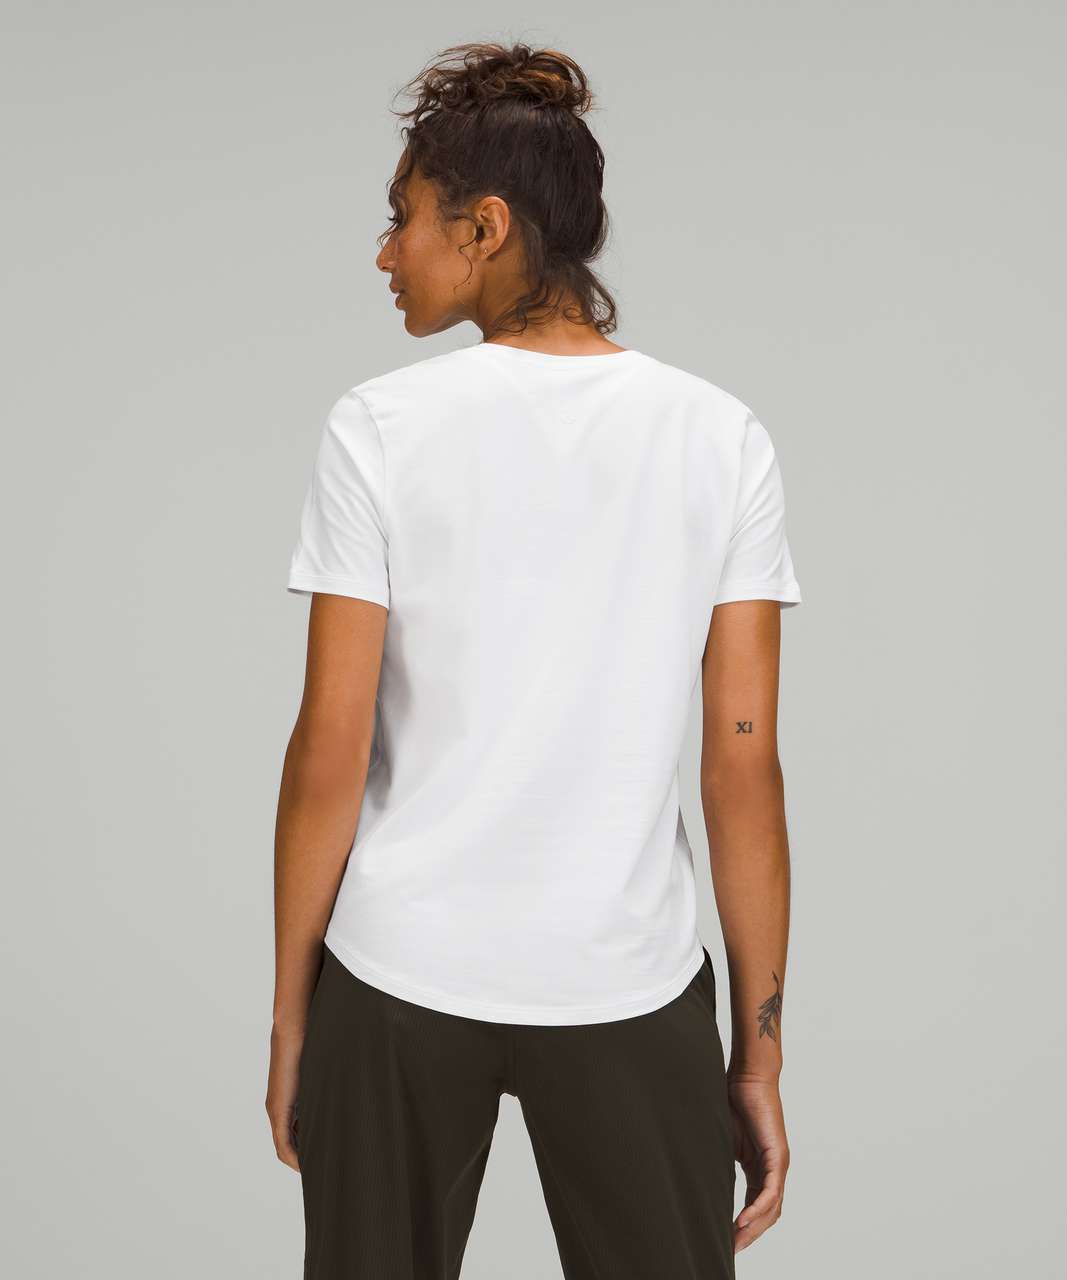 Lululemon Love Tee Short Sleeve V-Neck T-Shirt - White